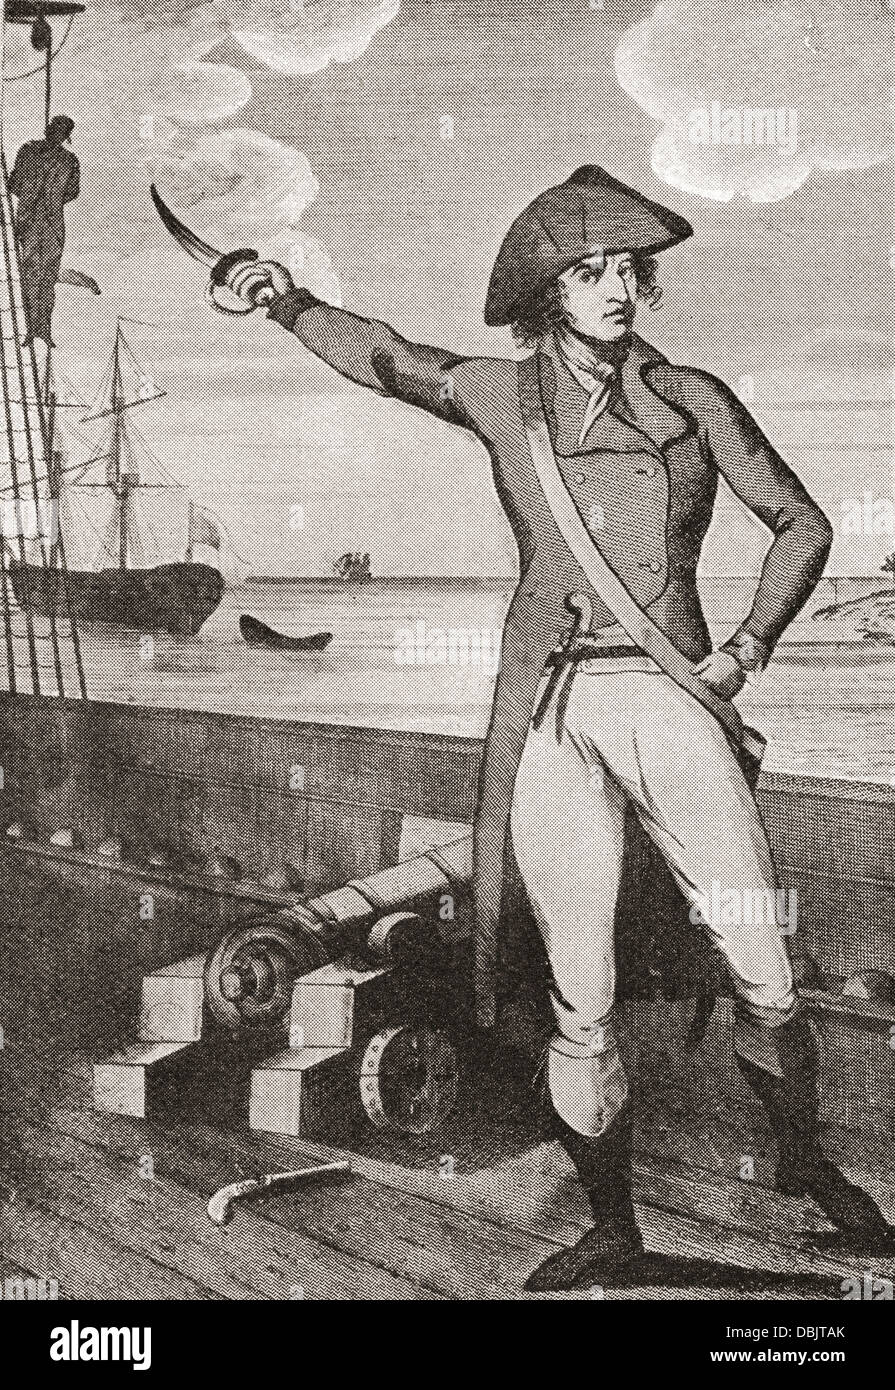 Richard Parker, 1767-1797. Englischer Matrose seinerseits in der so genannten "Floating Republik", Marine-Meuterei hingerichtet. Stockfoto